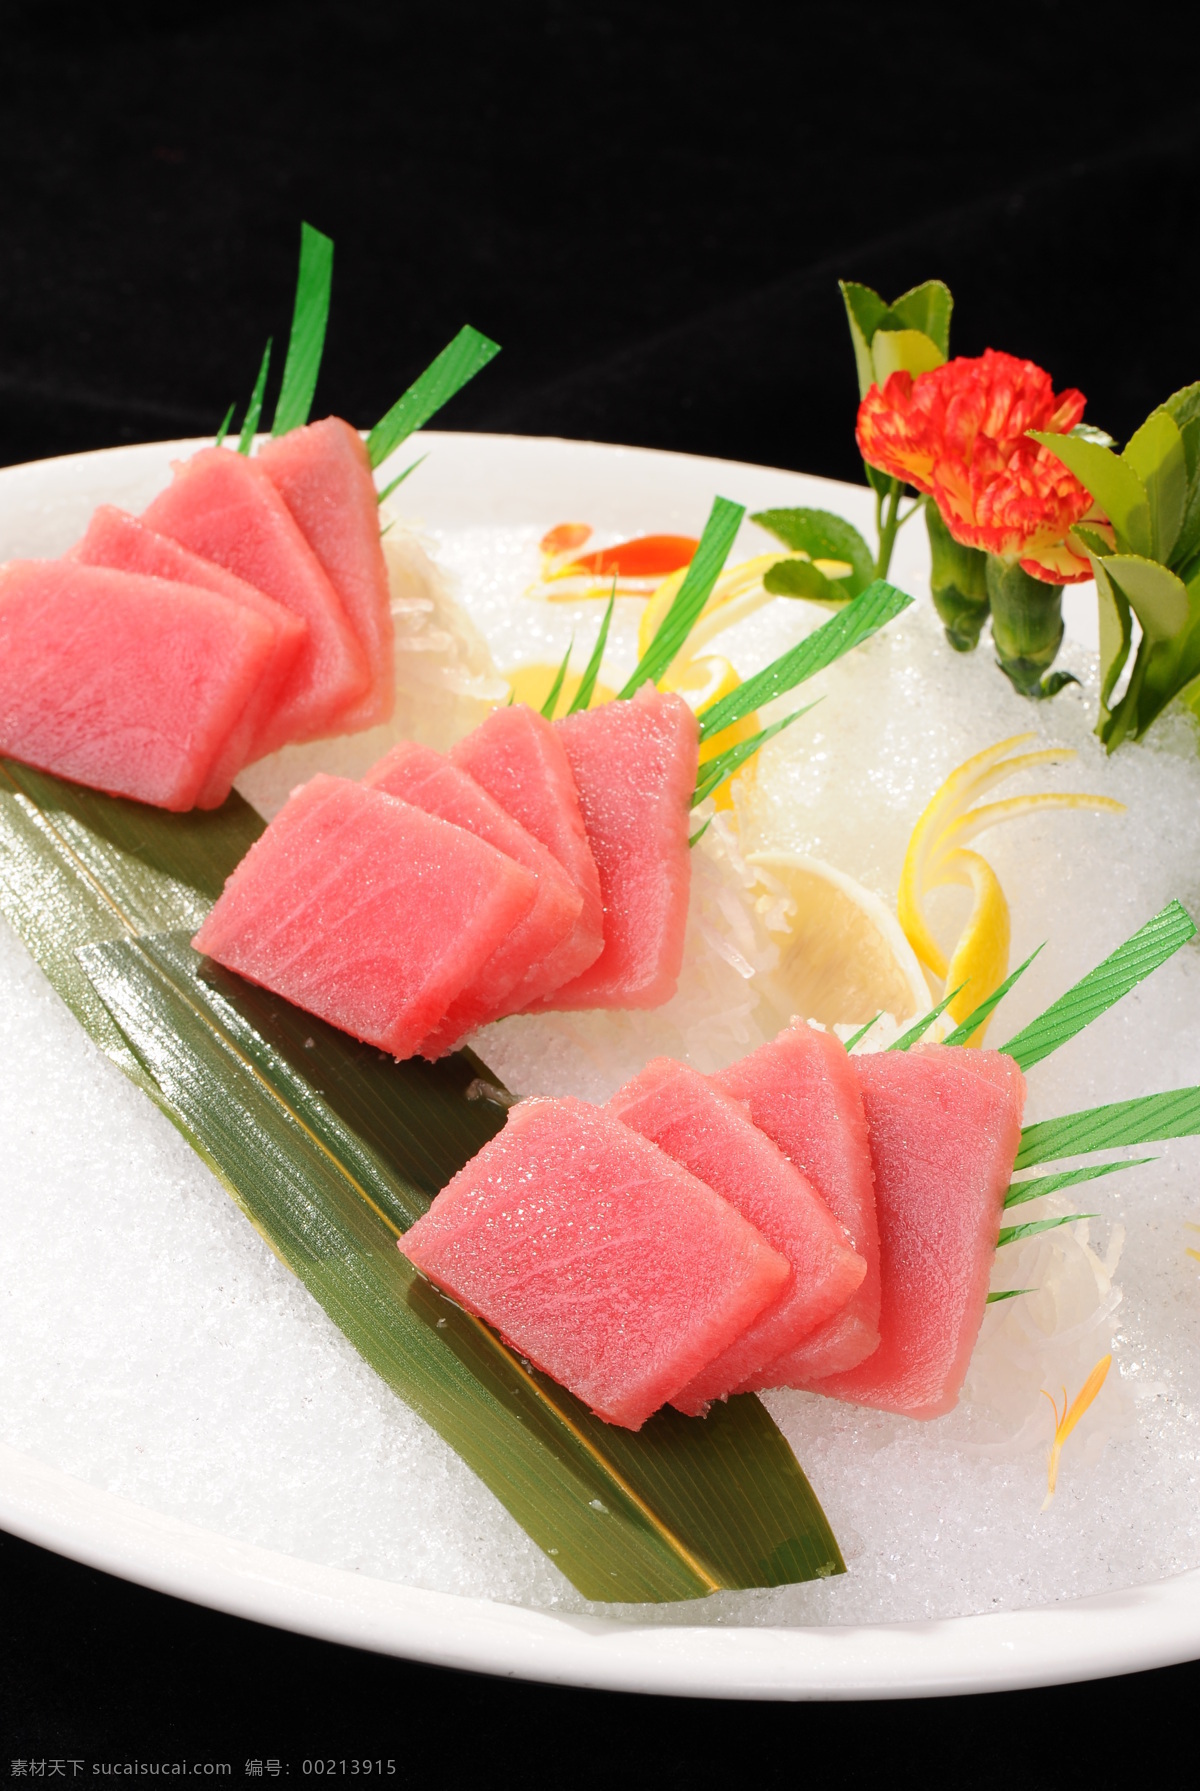 金枪鱼刺身 金枪鱼寿司 刺身 日本料理 生鱼片 金枪鱼 红金枪鱼 西餐美食 餐饮美食 传统美食 黑色